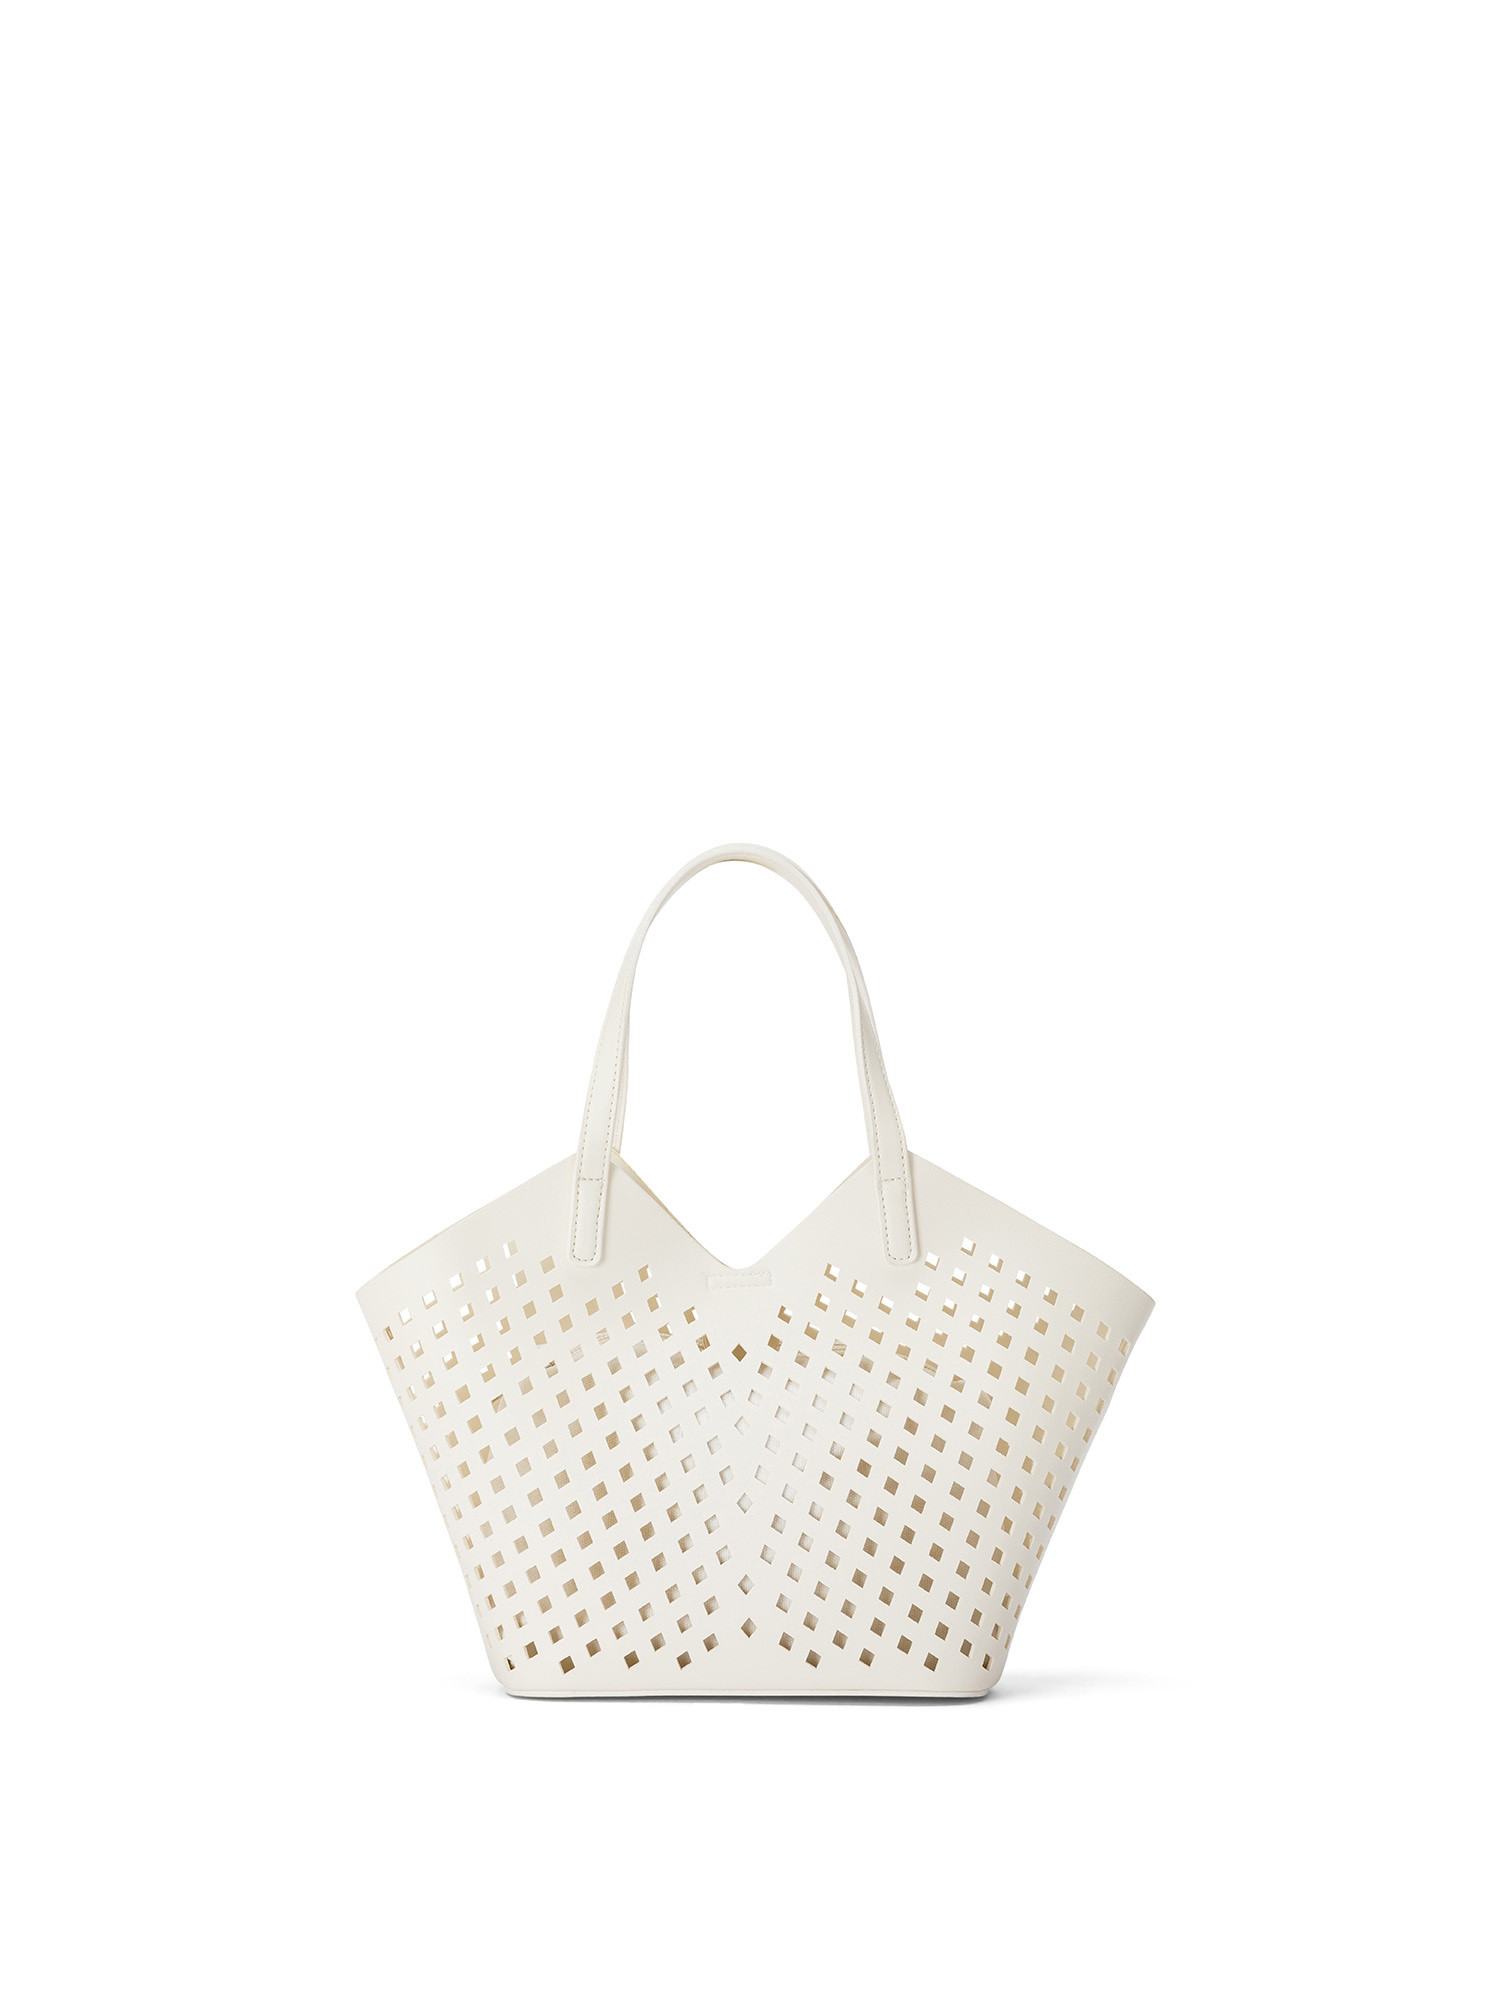 Koan - Shopping bag traforata, Bianco, large